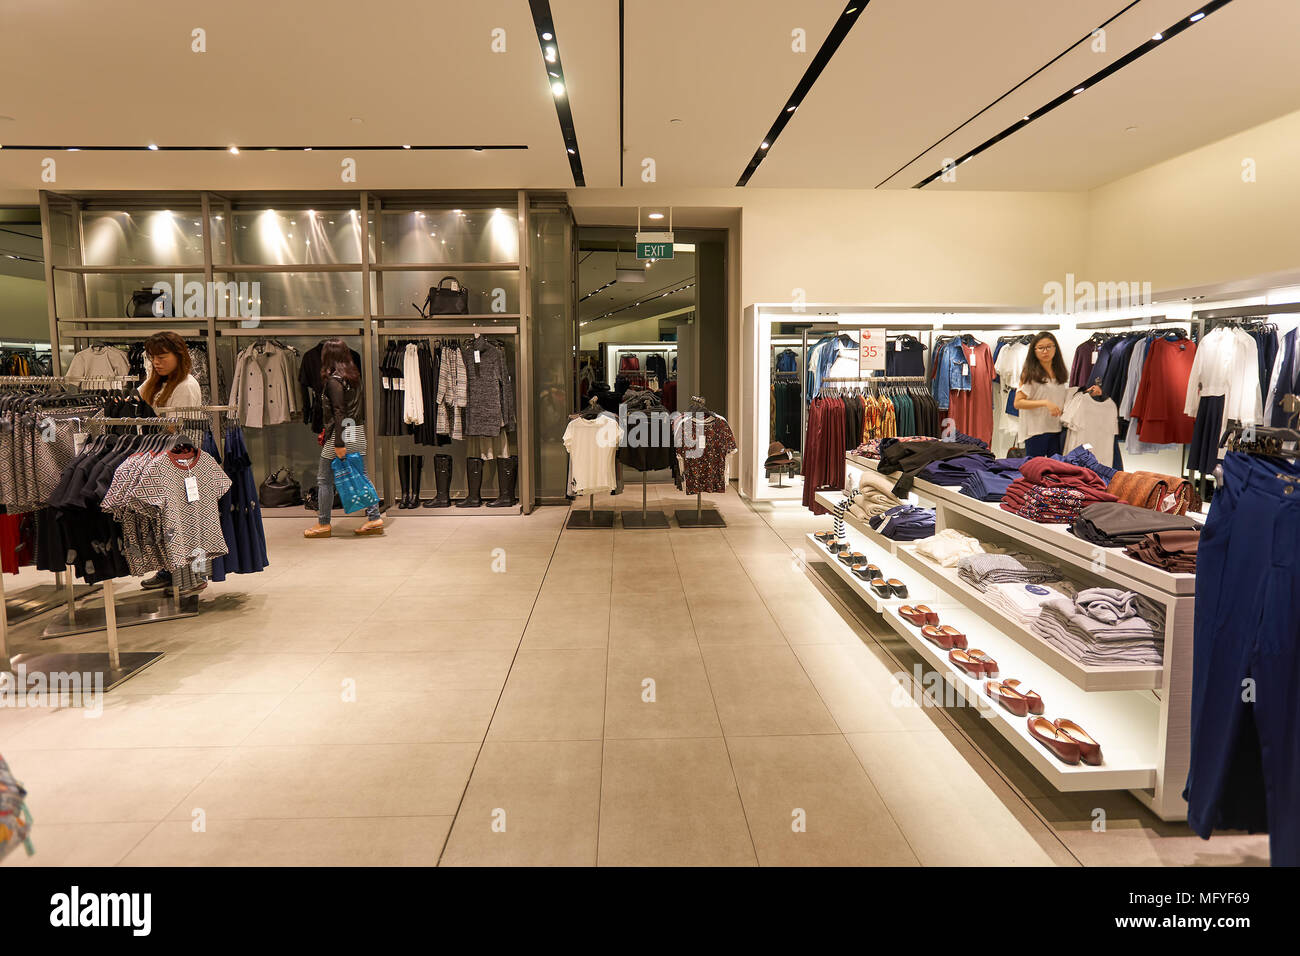 Singapour - 08 novembre, 2015 : intérieur d'une boutique Zara. Zara est un  détaillant de vêtements et accessoires espagnol basé à La Corogne, Galice  Photo Stock - Alamy